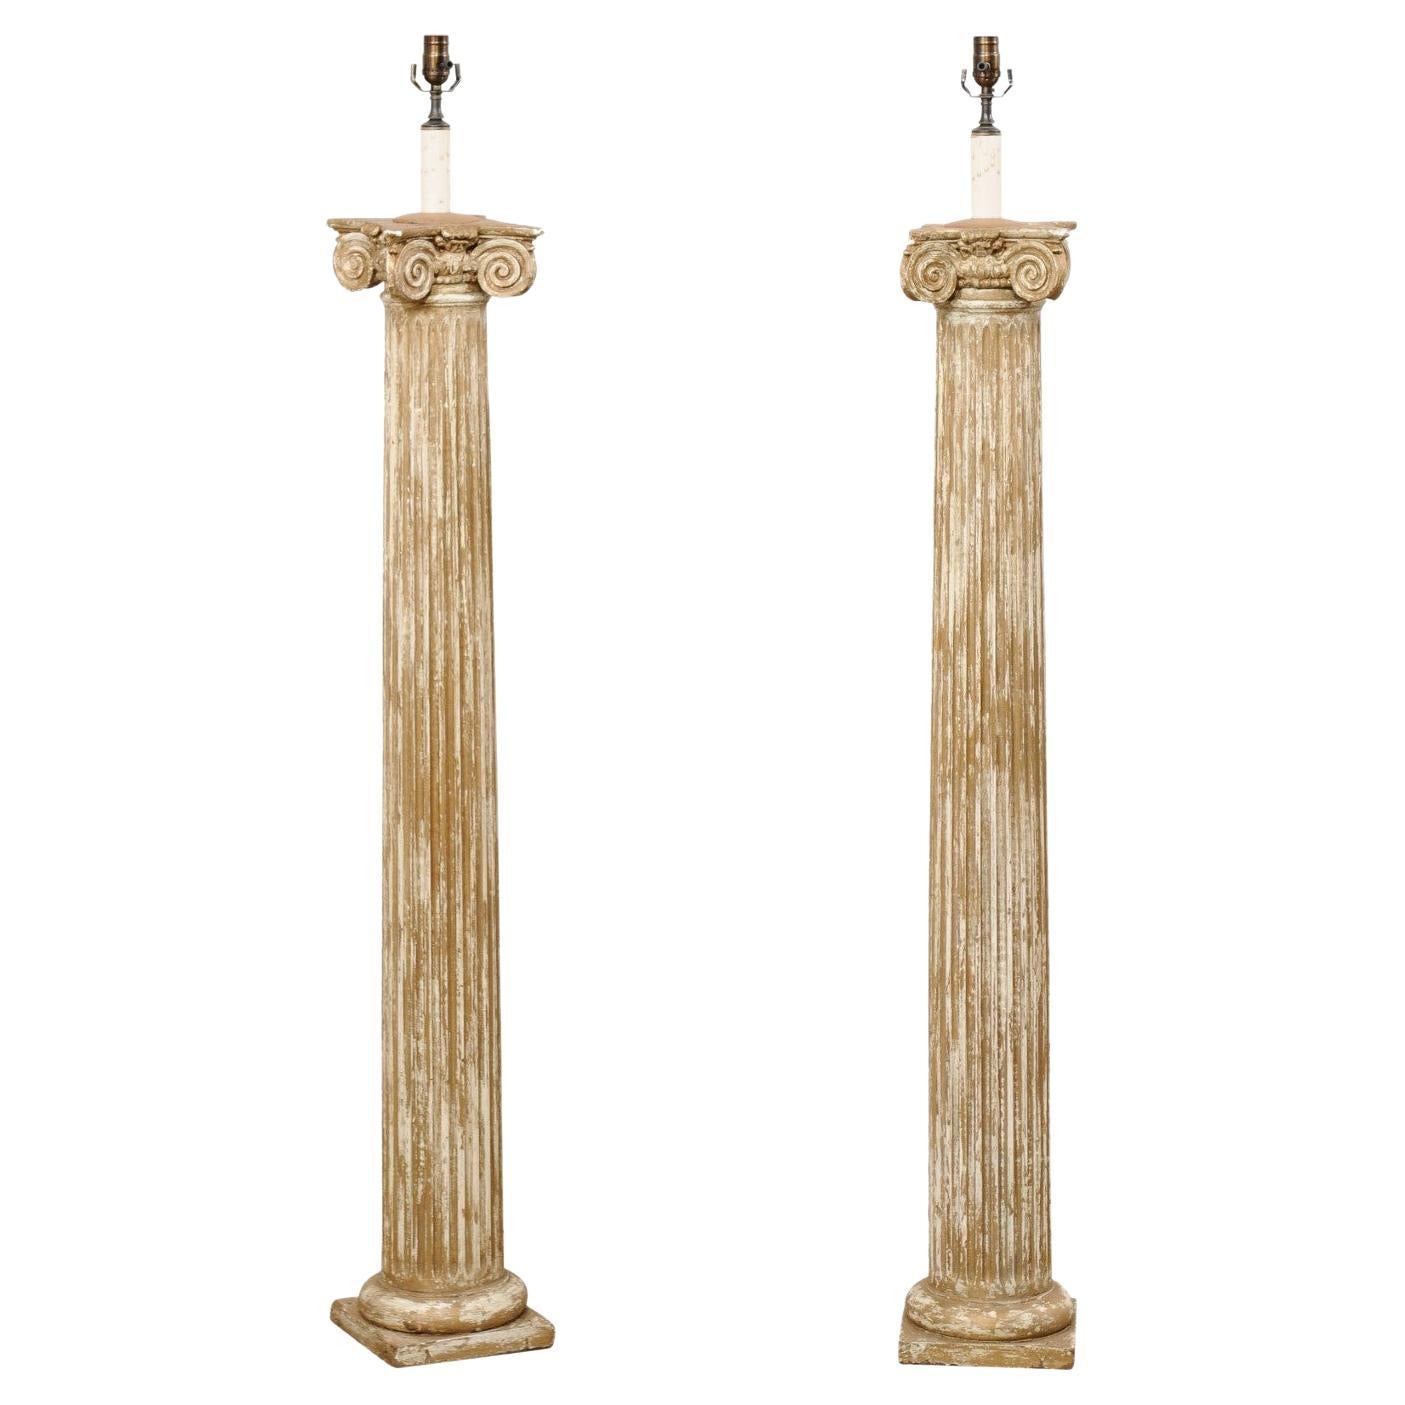 Paire de lampadaires à une seule lumière créés à partir de colonnes cannelées ioniques du 19e siècle